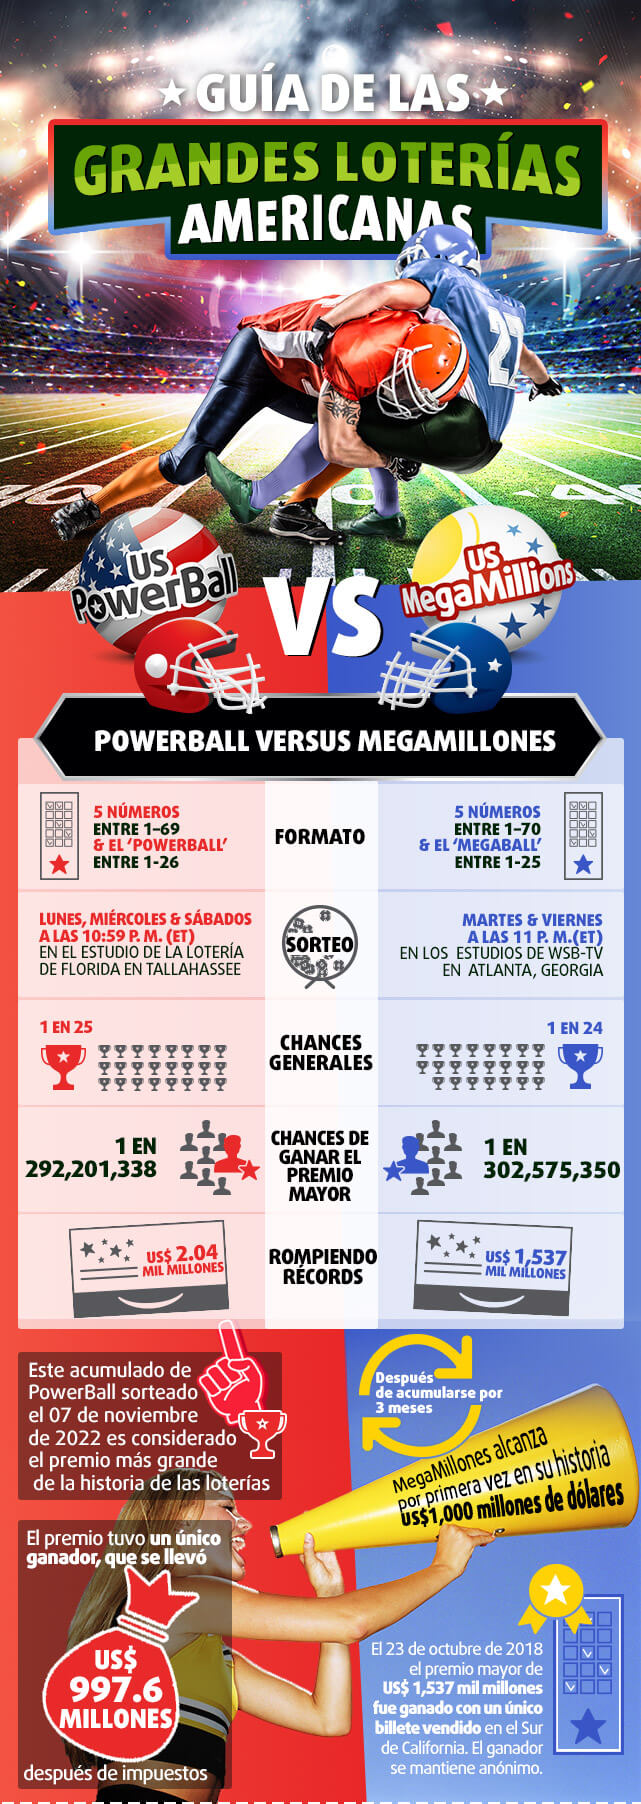 Infografía PowerBall vs MegaMillions parte 1 información general